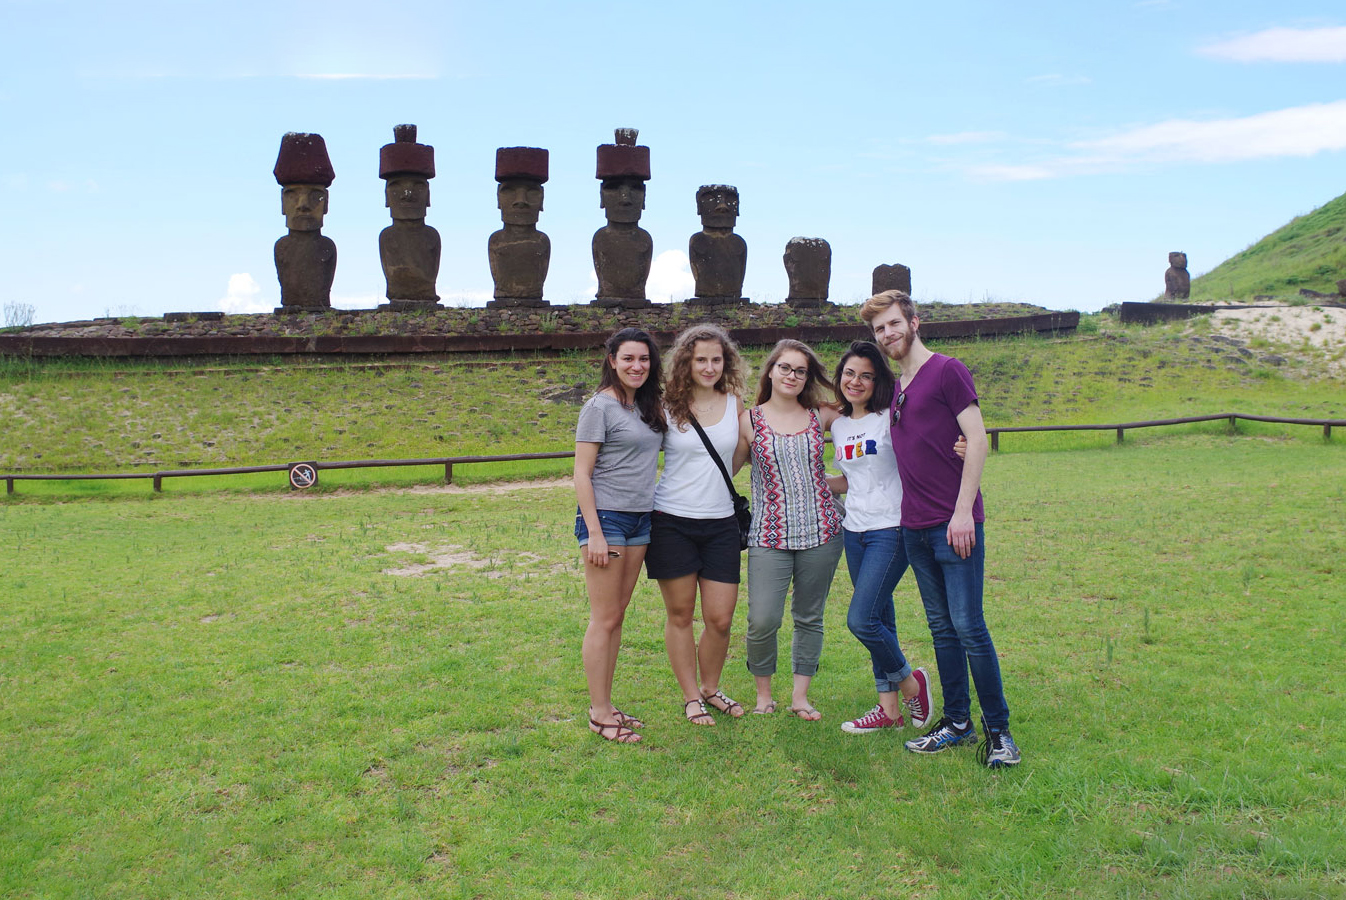 A salvare i Moai ci pensa Lorenzo de’ Medici (video)